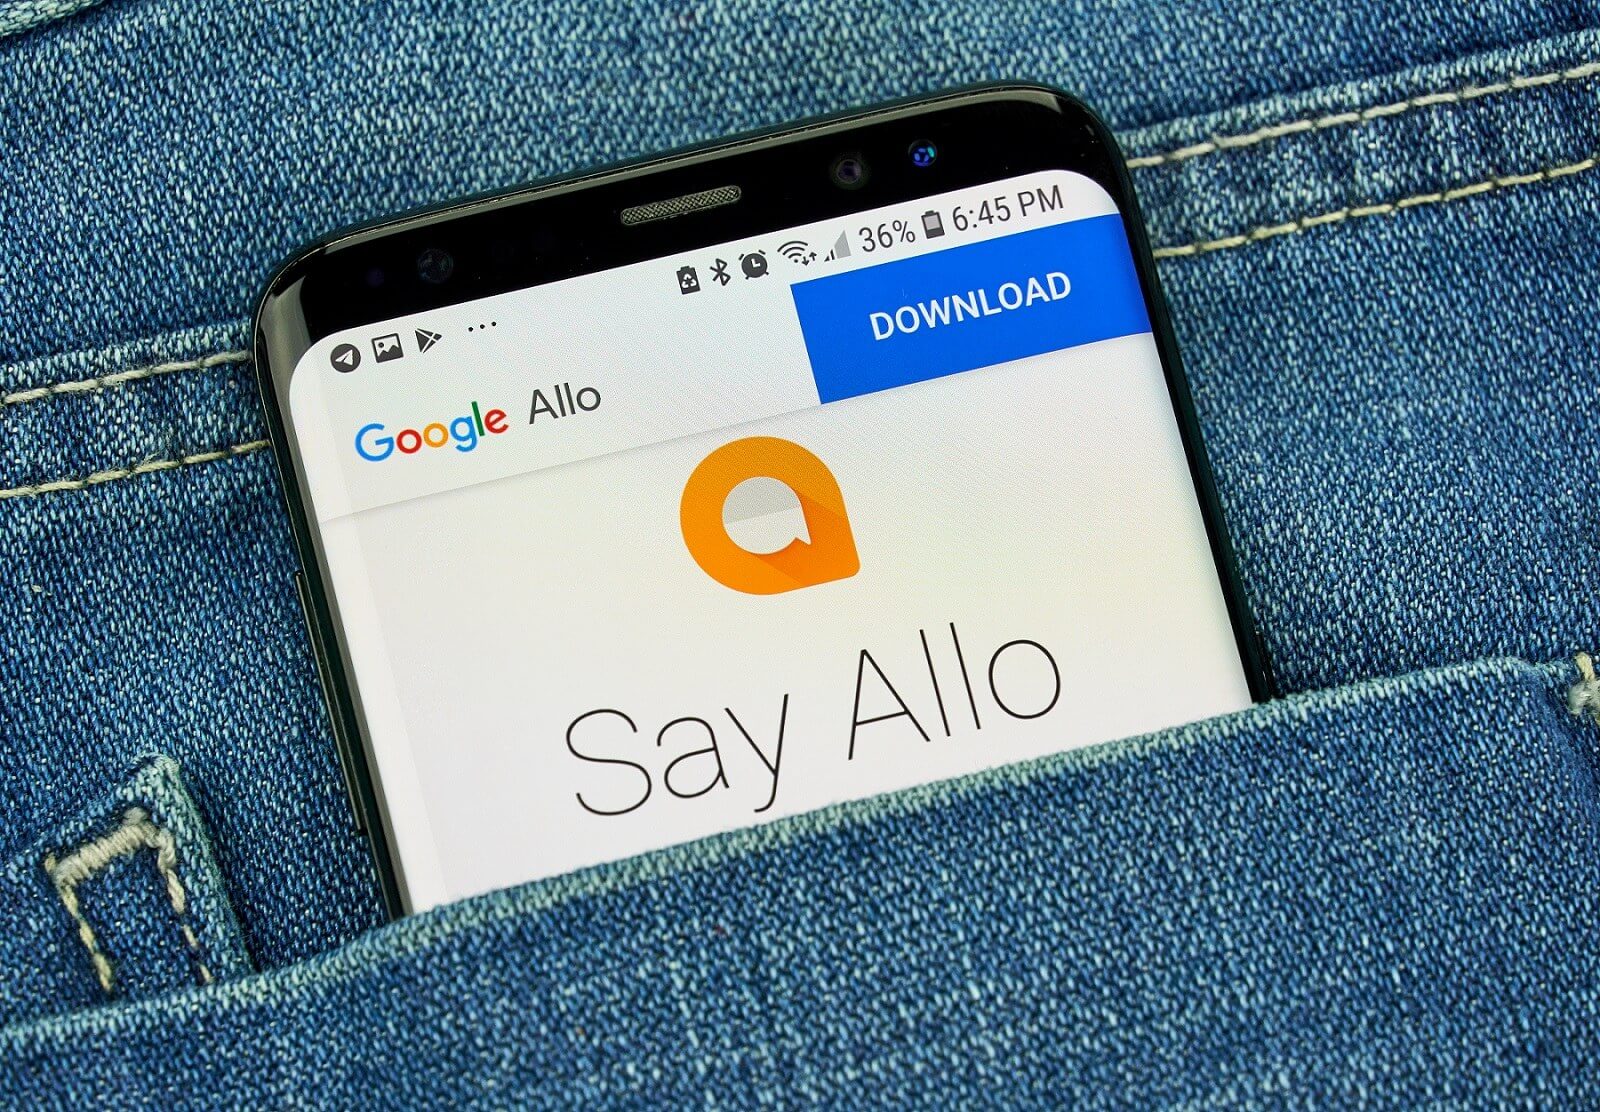 Google will shut down Allo next year